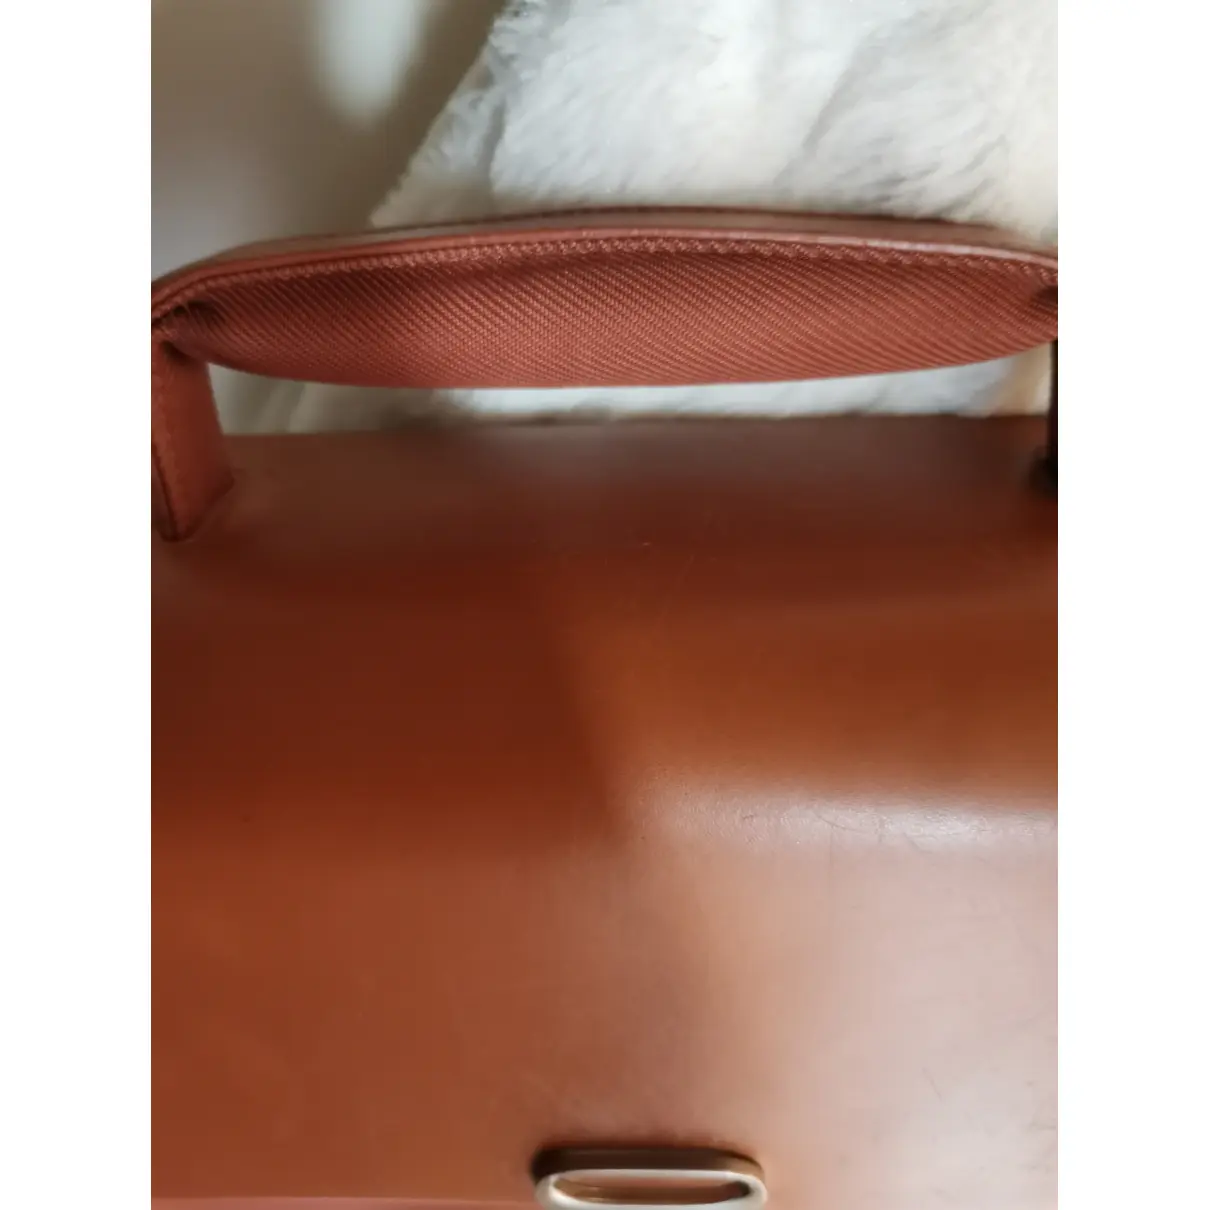 Buy Piquadro Leather satchel online